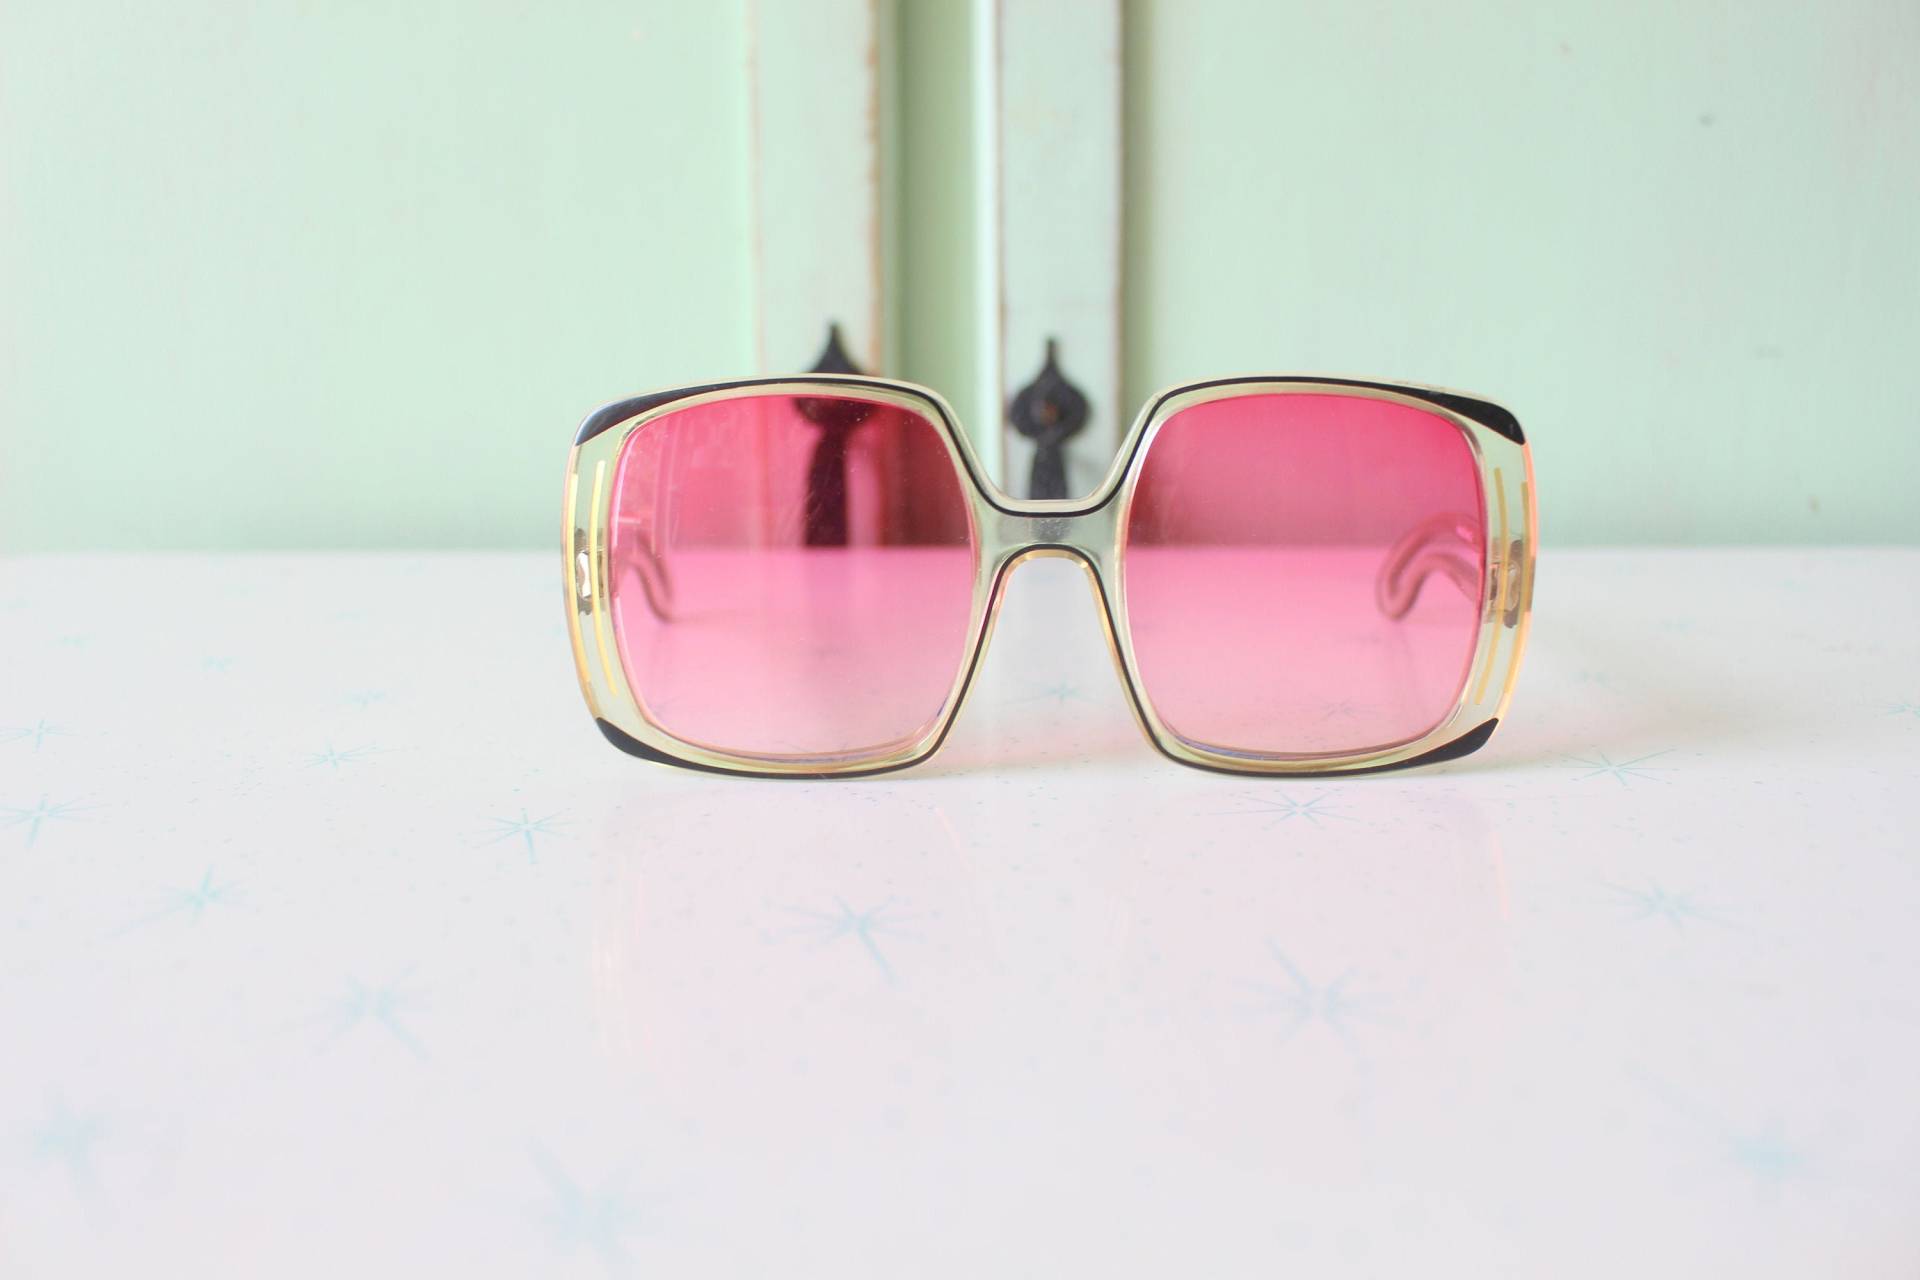 True Vintage 1960Er Jahre Atomic Retro Sonnenbrille...brille. Schick. Accessoires Aus Den Jahren. Klassisch. Zweigig. Designer-Vintage. 1970Er Jahre von retroandme